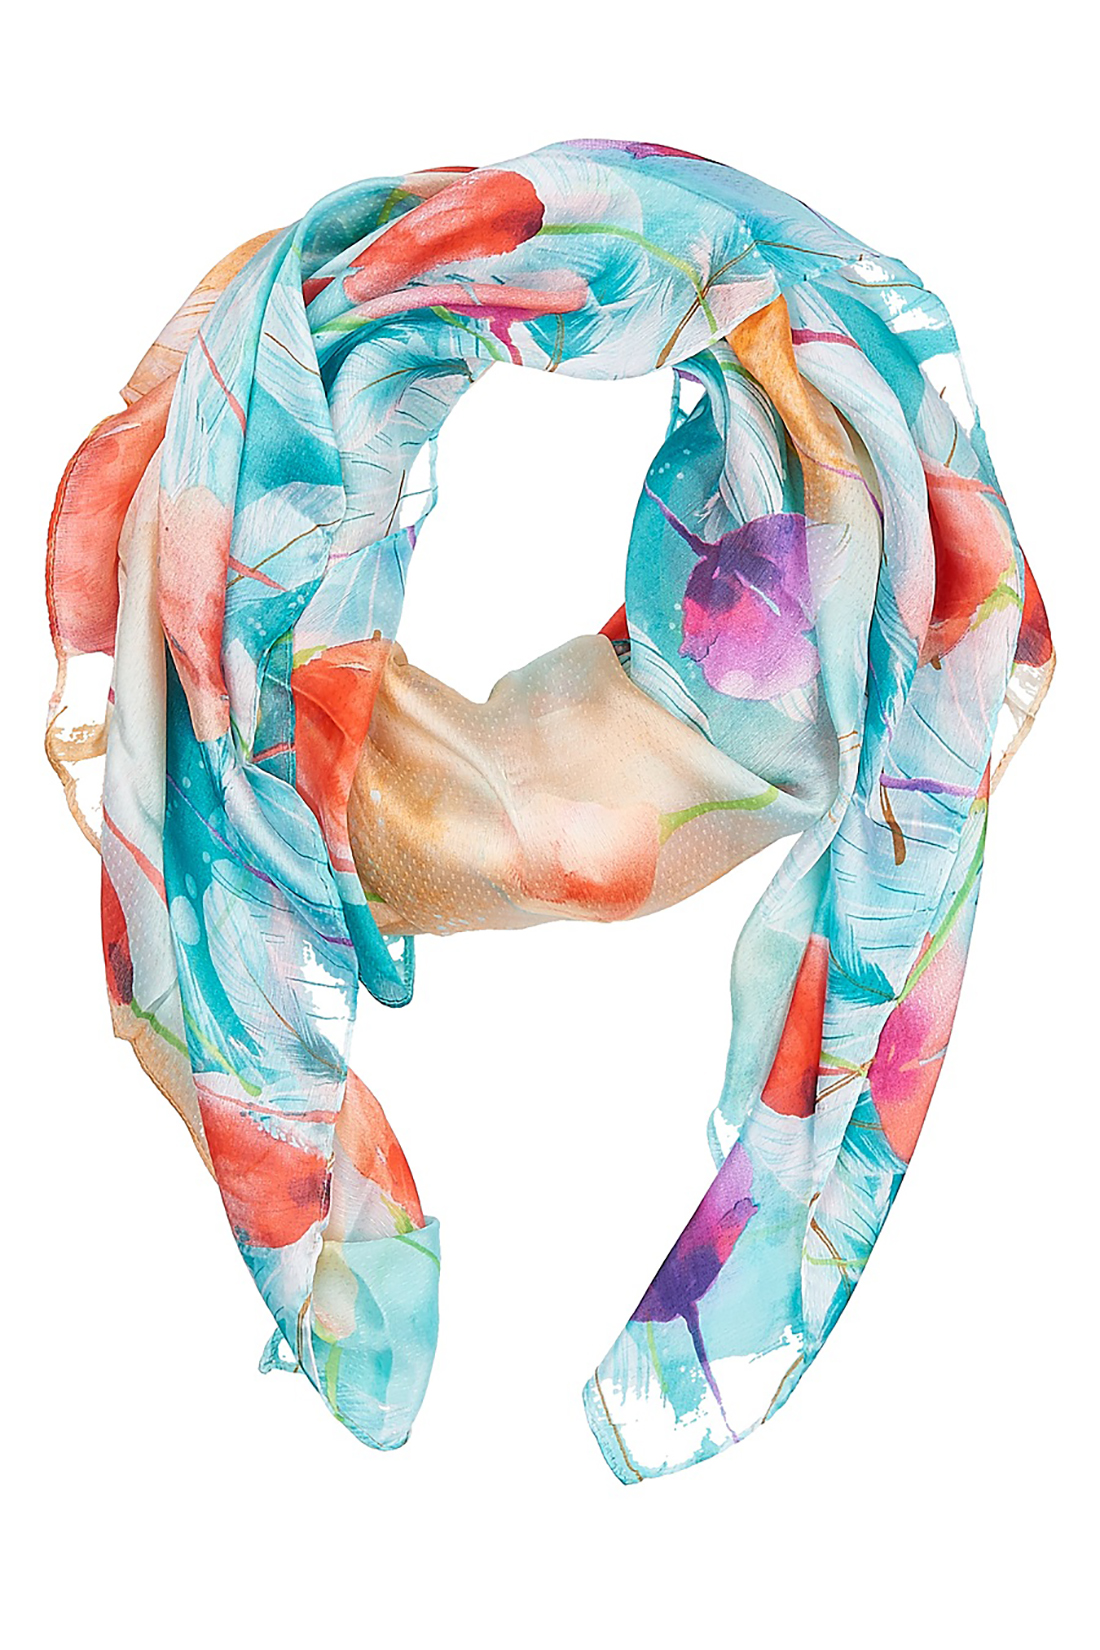 Шёлковый шарф с тюльпанами (арт. baon B358050), размер Без/раз, цвет multicolor#многоцветный